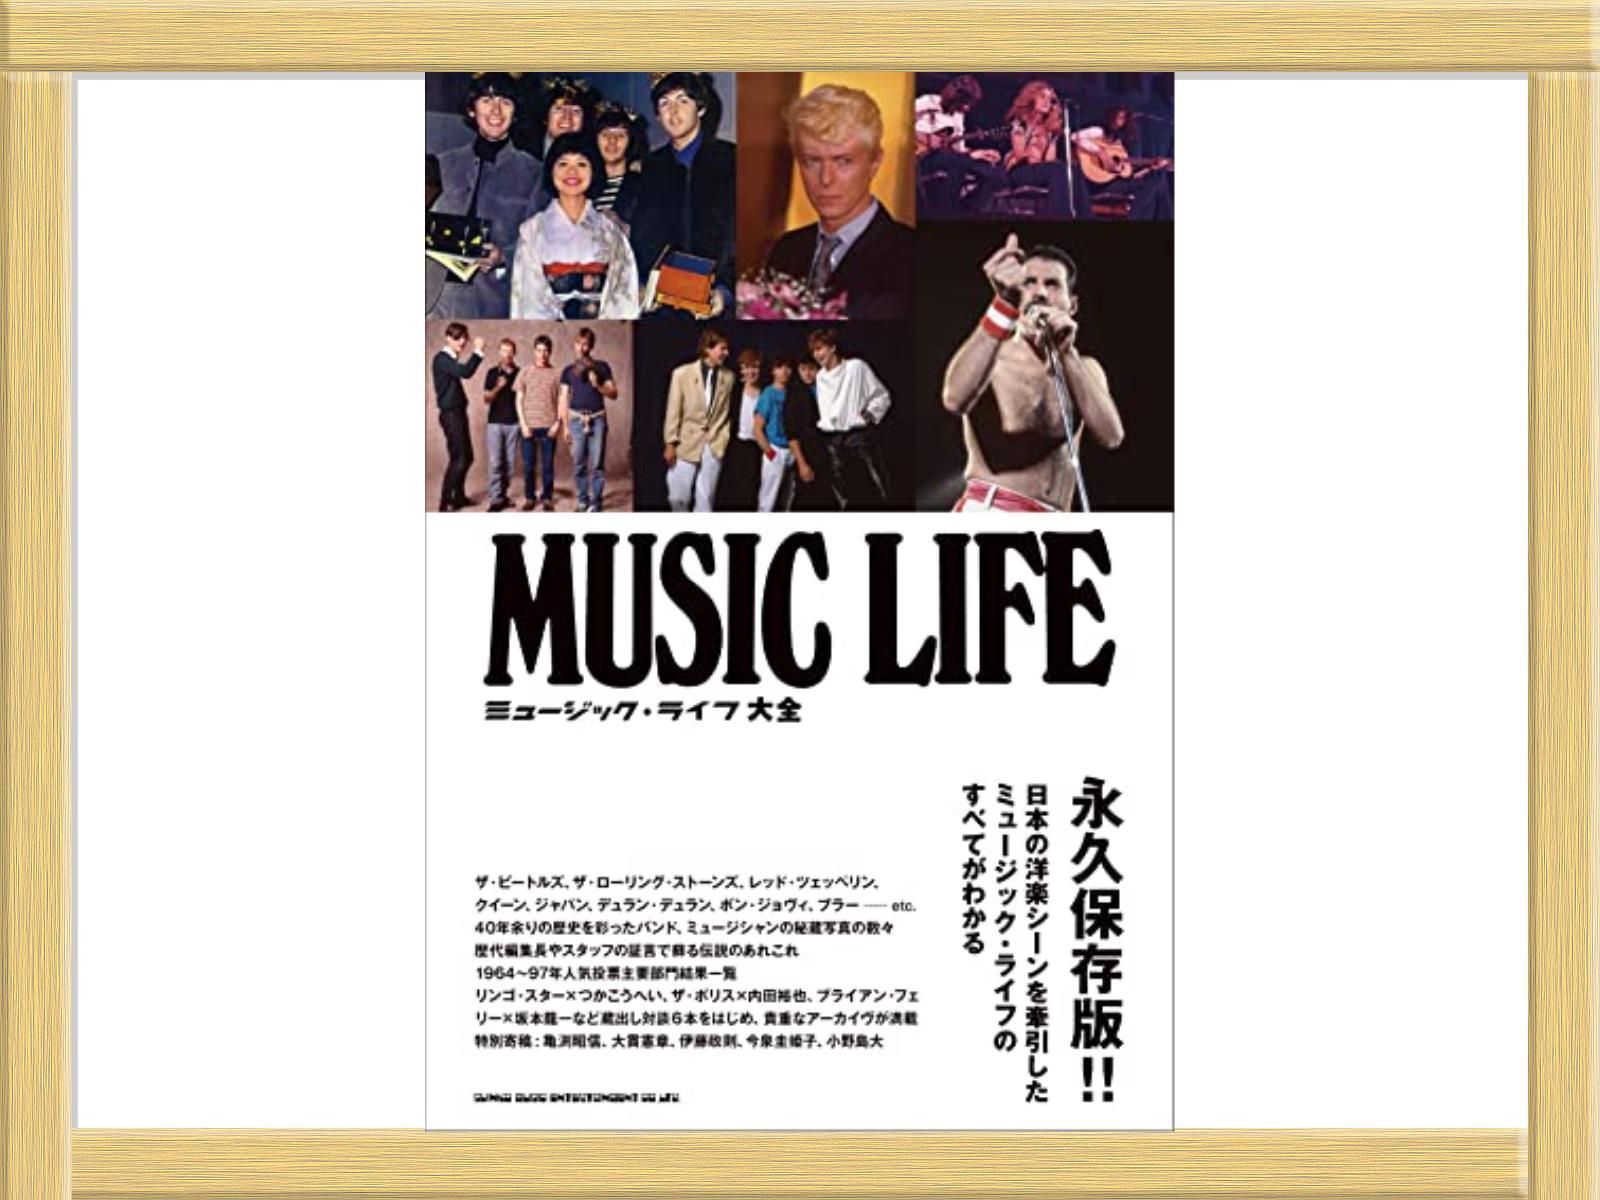 ミュージック・ライフ 大全 MUSIC LIFE 永久保存版 - アート/エンタメ 